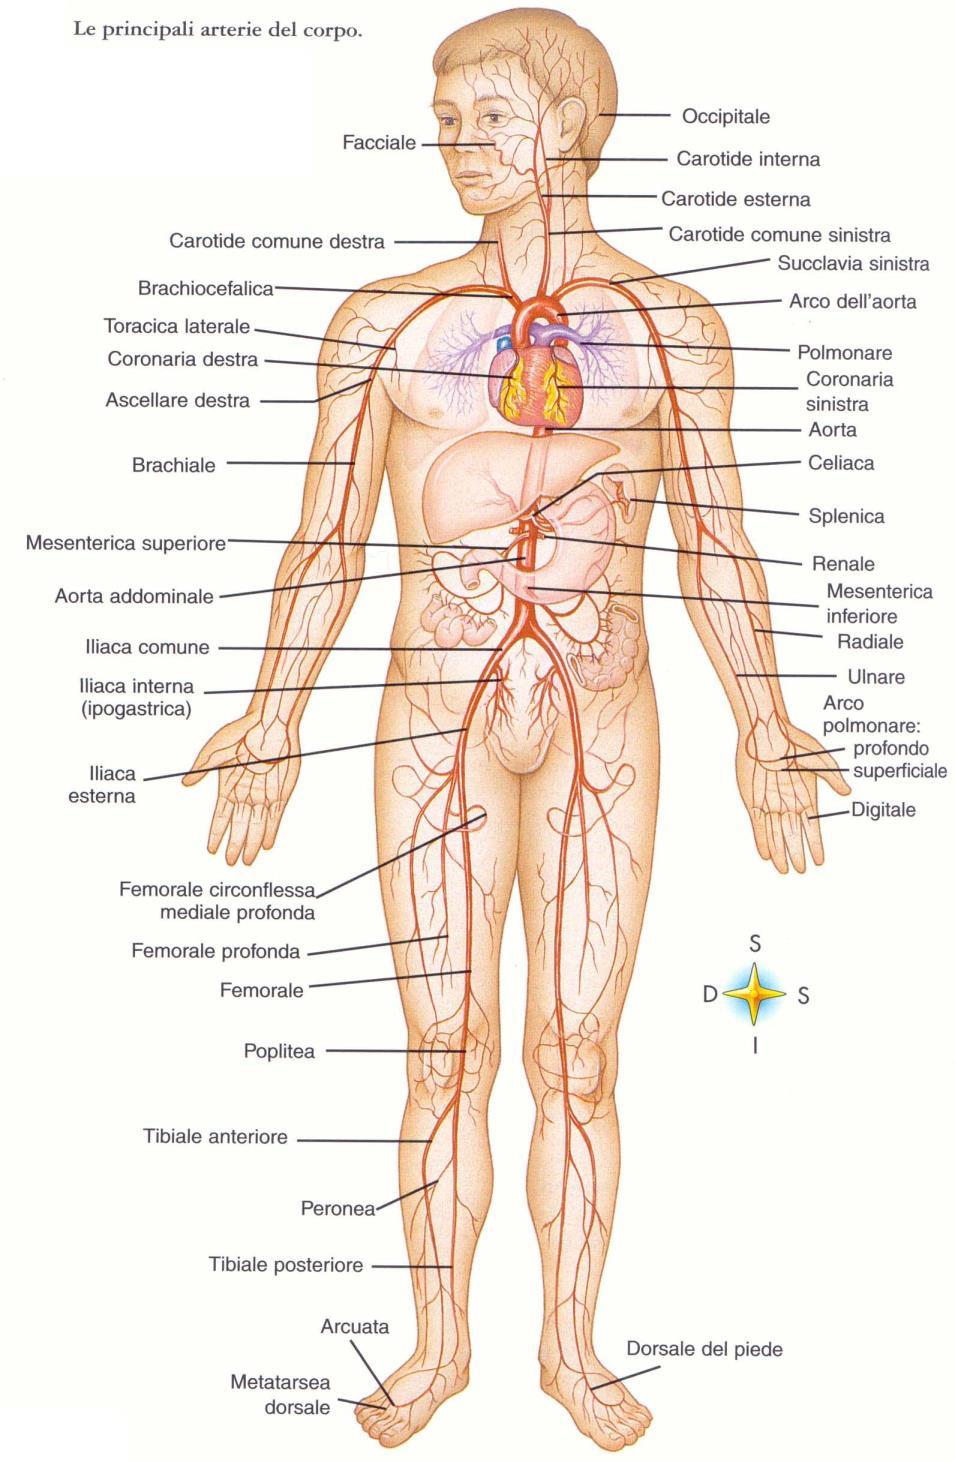 Arterie del Circolo Sistemico che